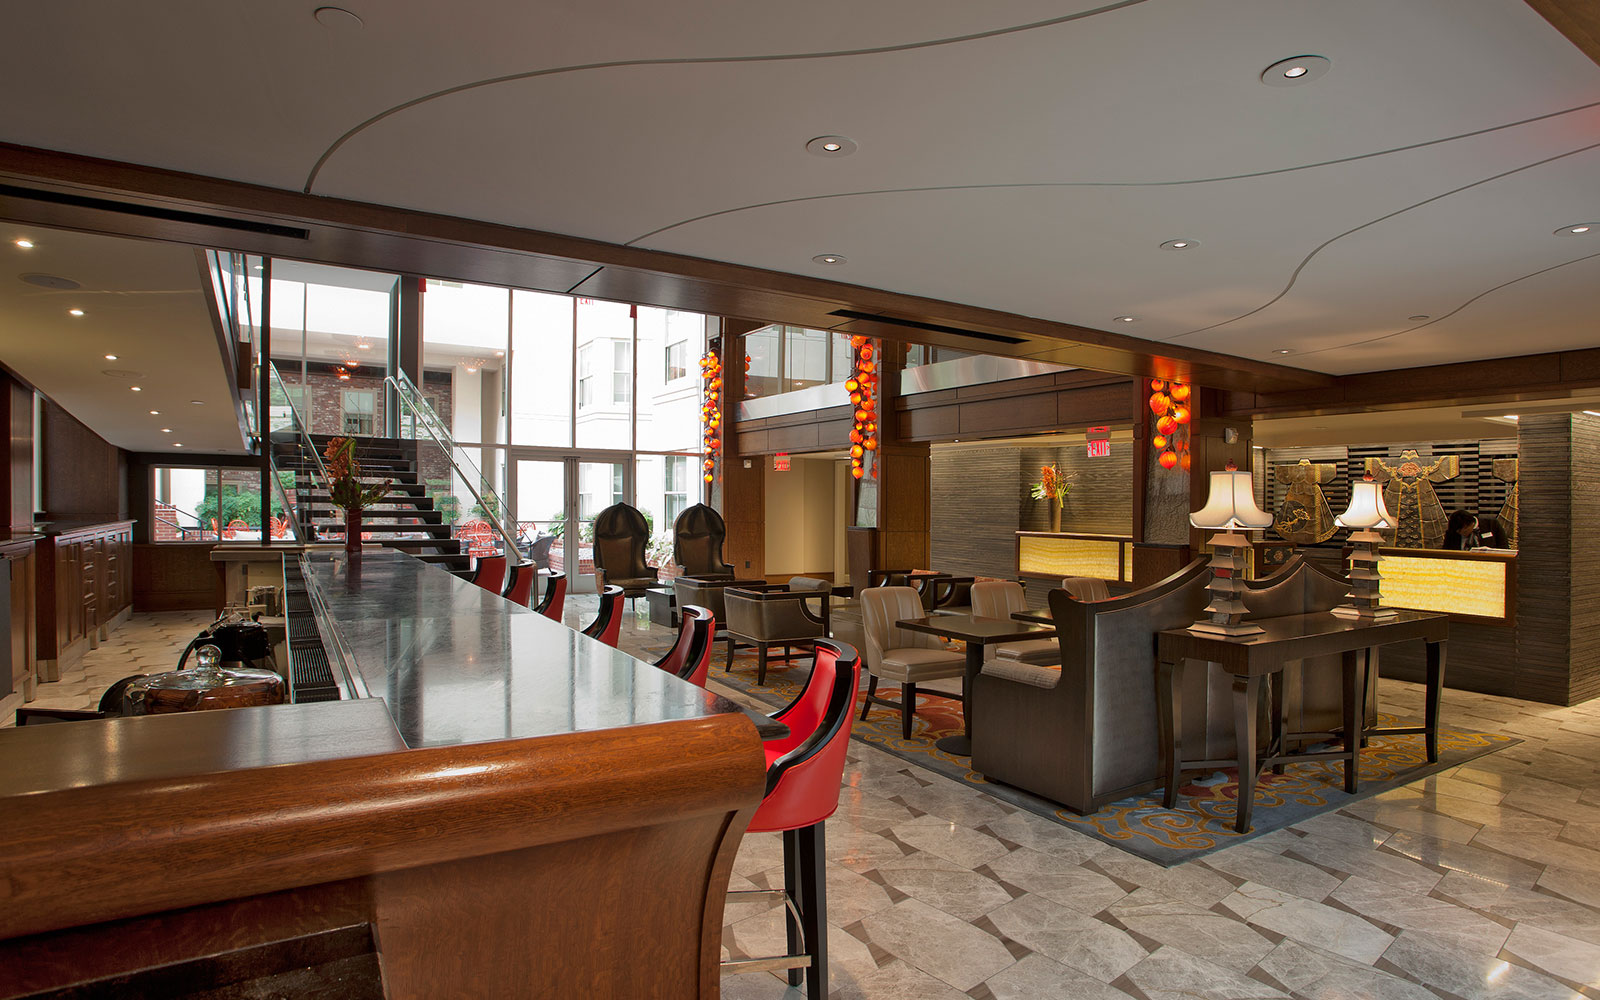 Overview of Morrison-Clark Historic Inn & Restaurant - Washington, DC